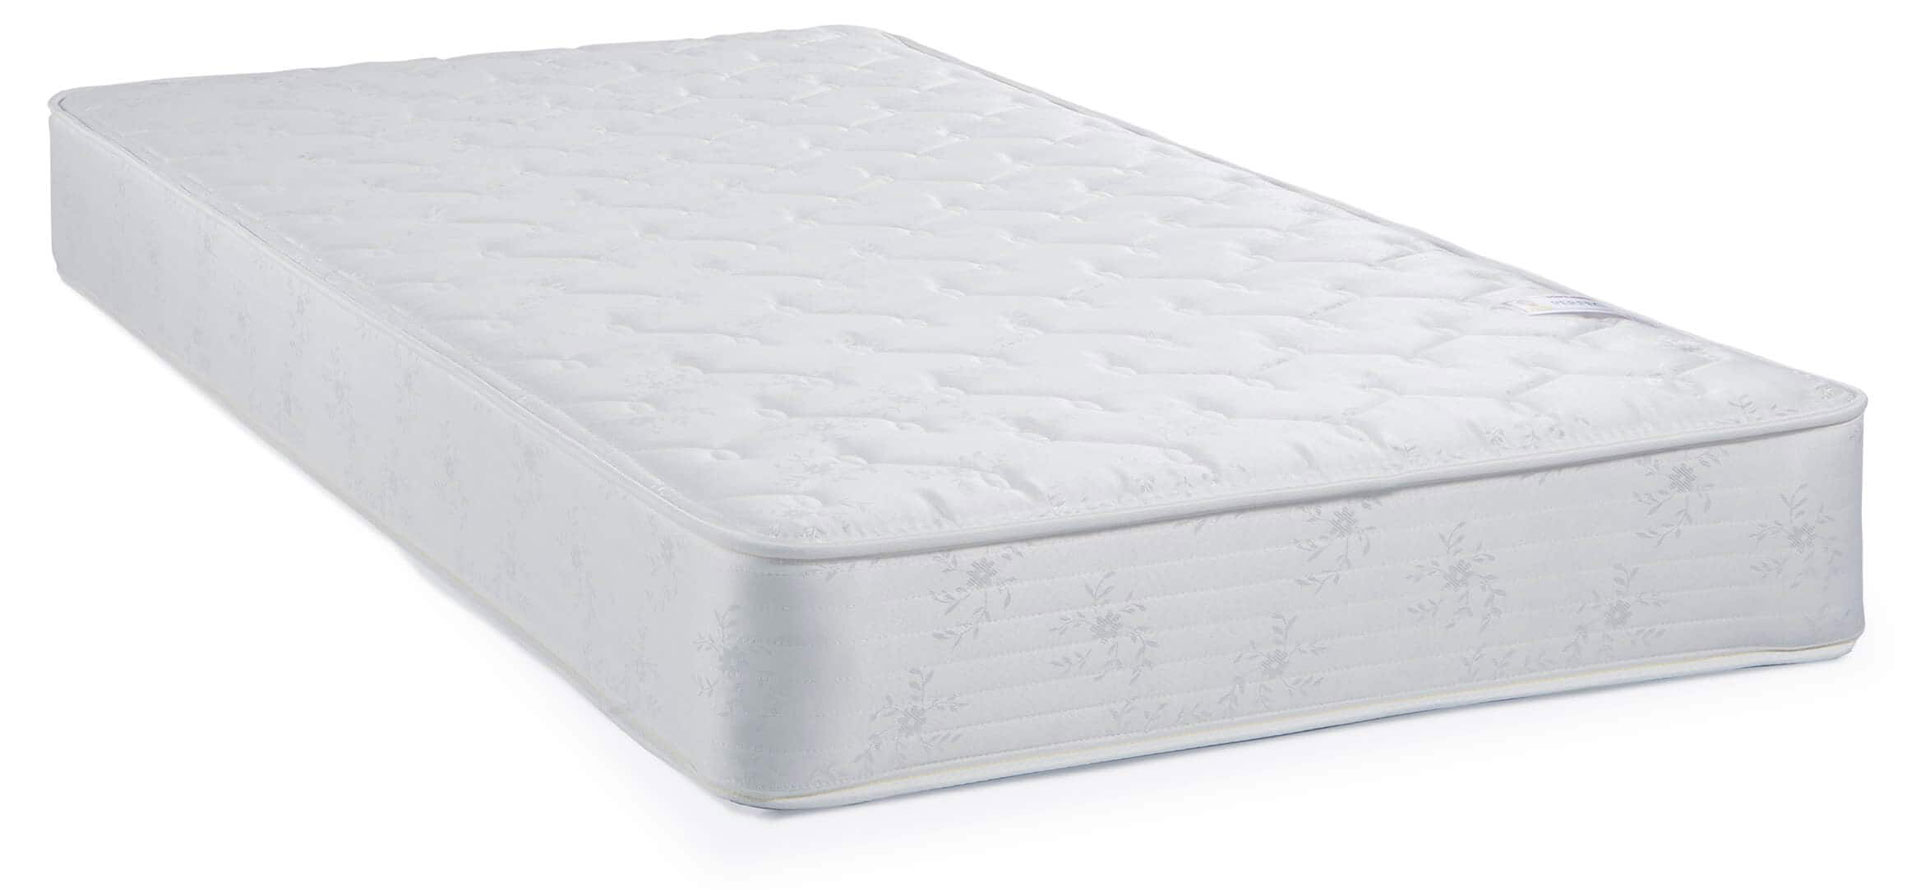 murphy bed queen mattress.